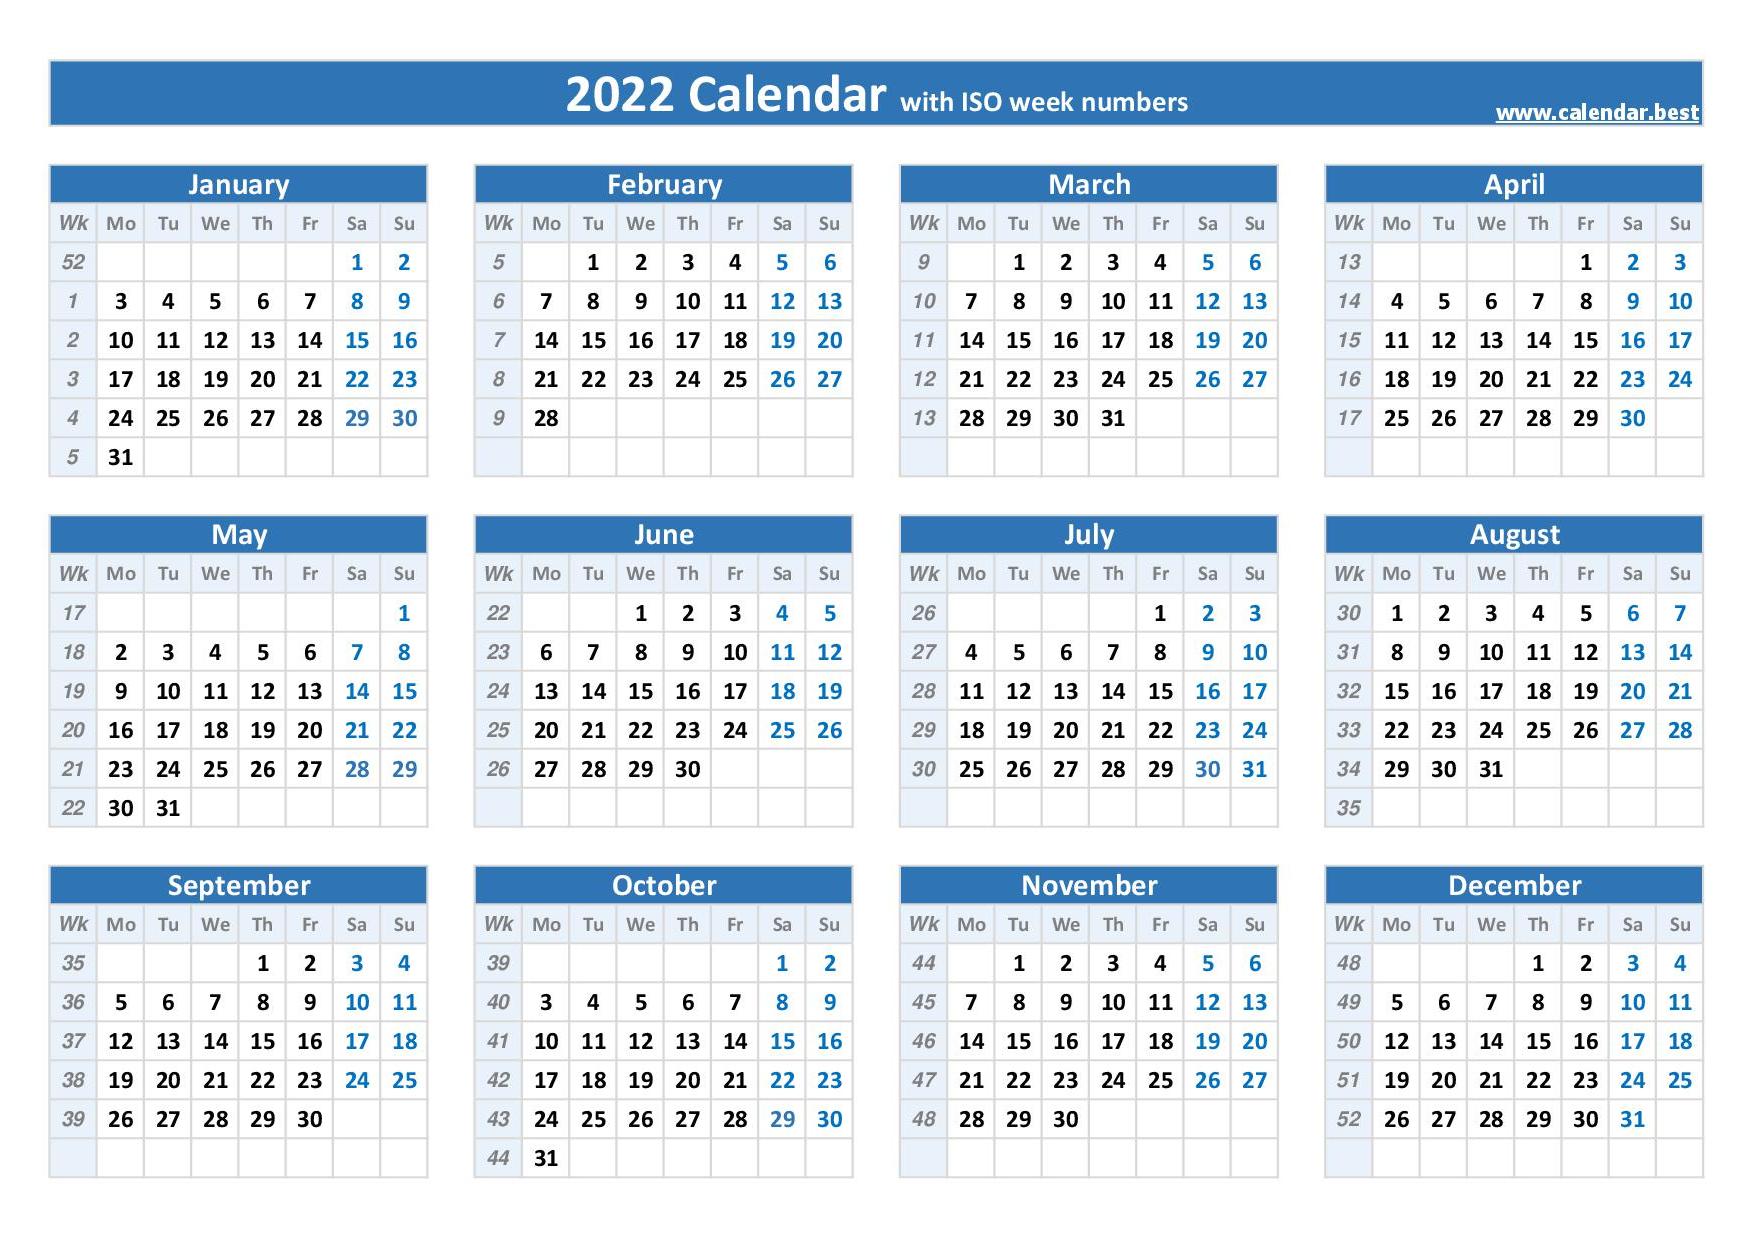 Calendar week 2022